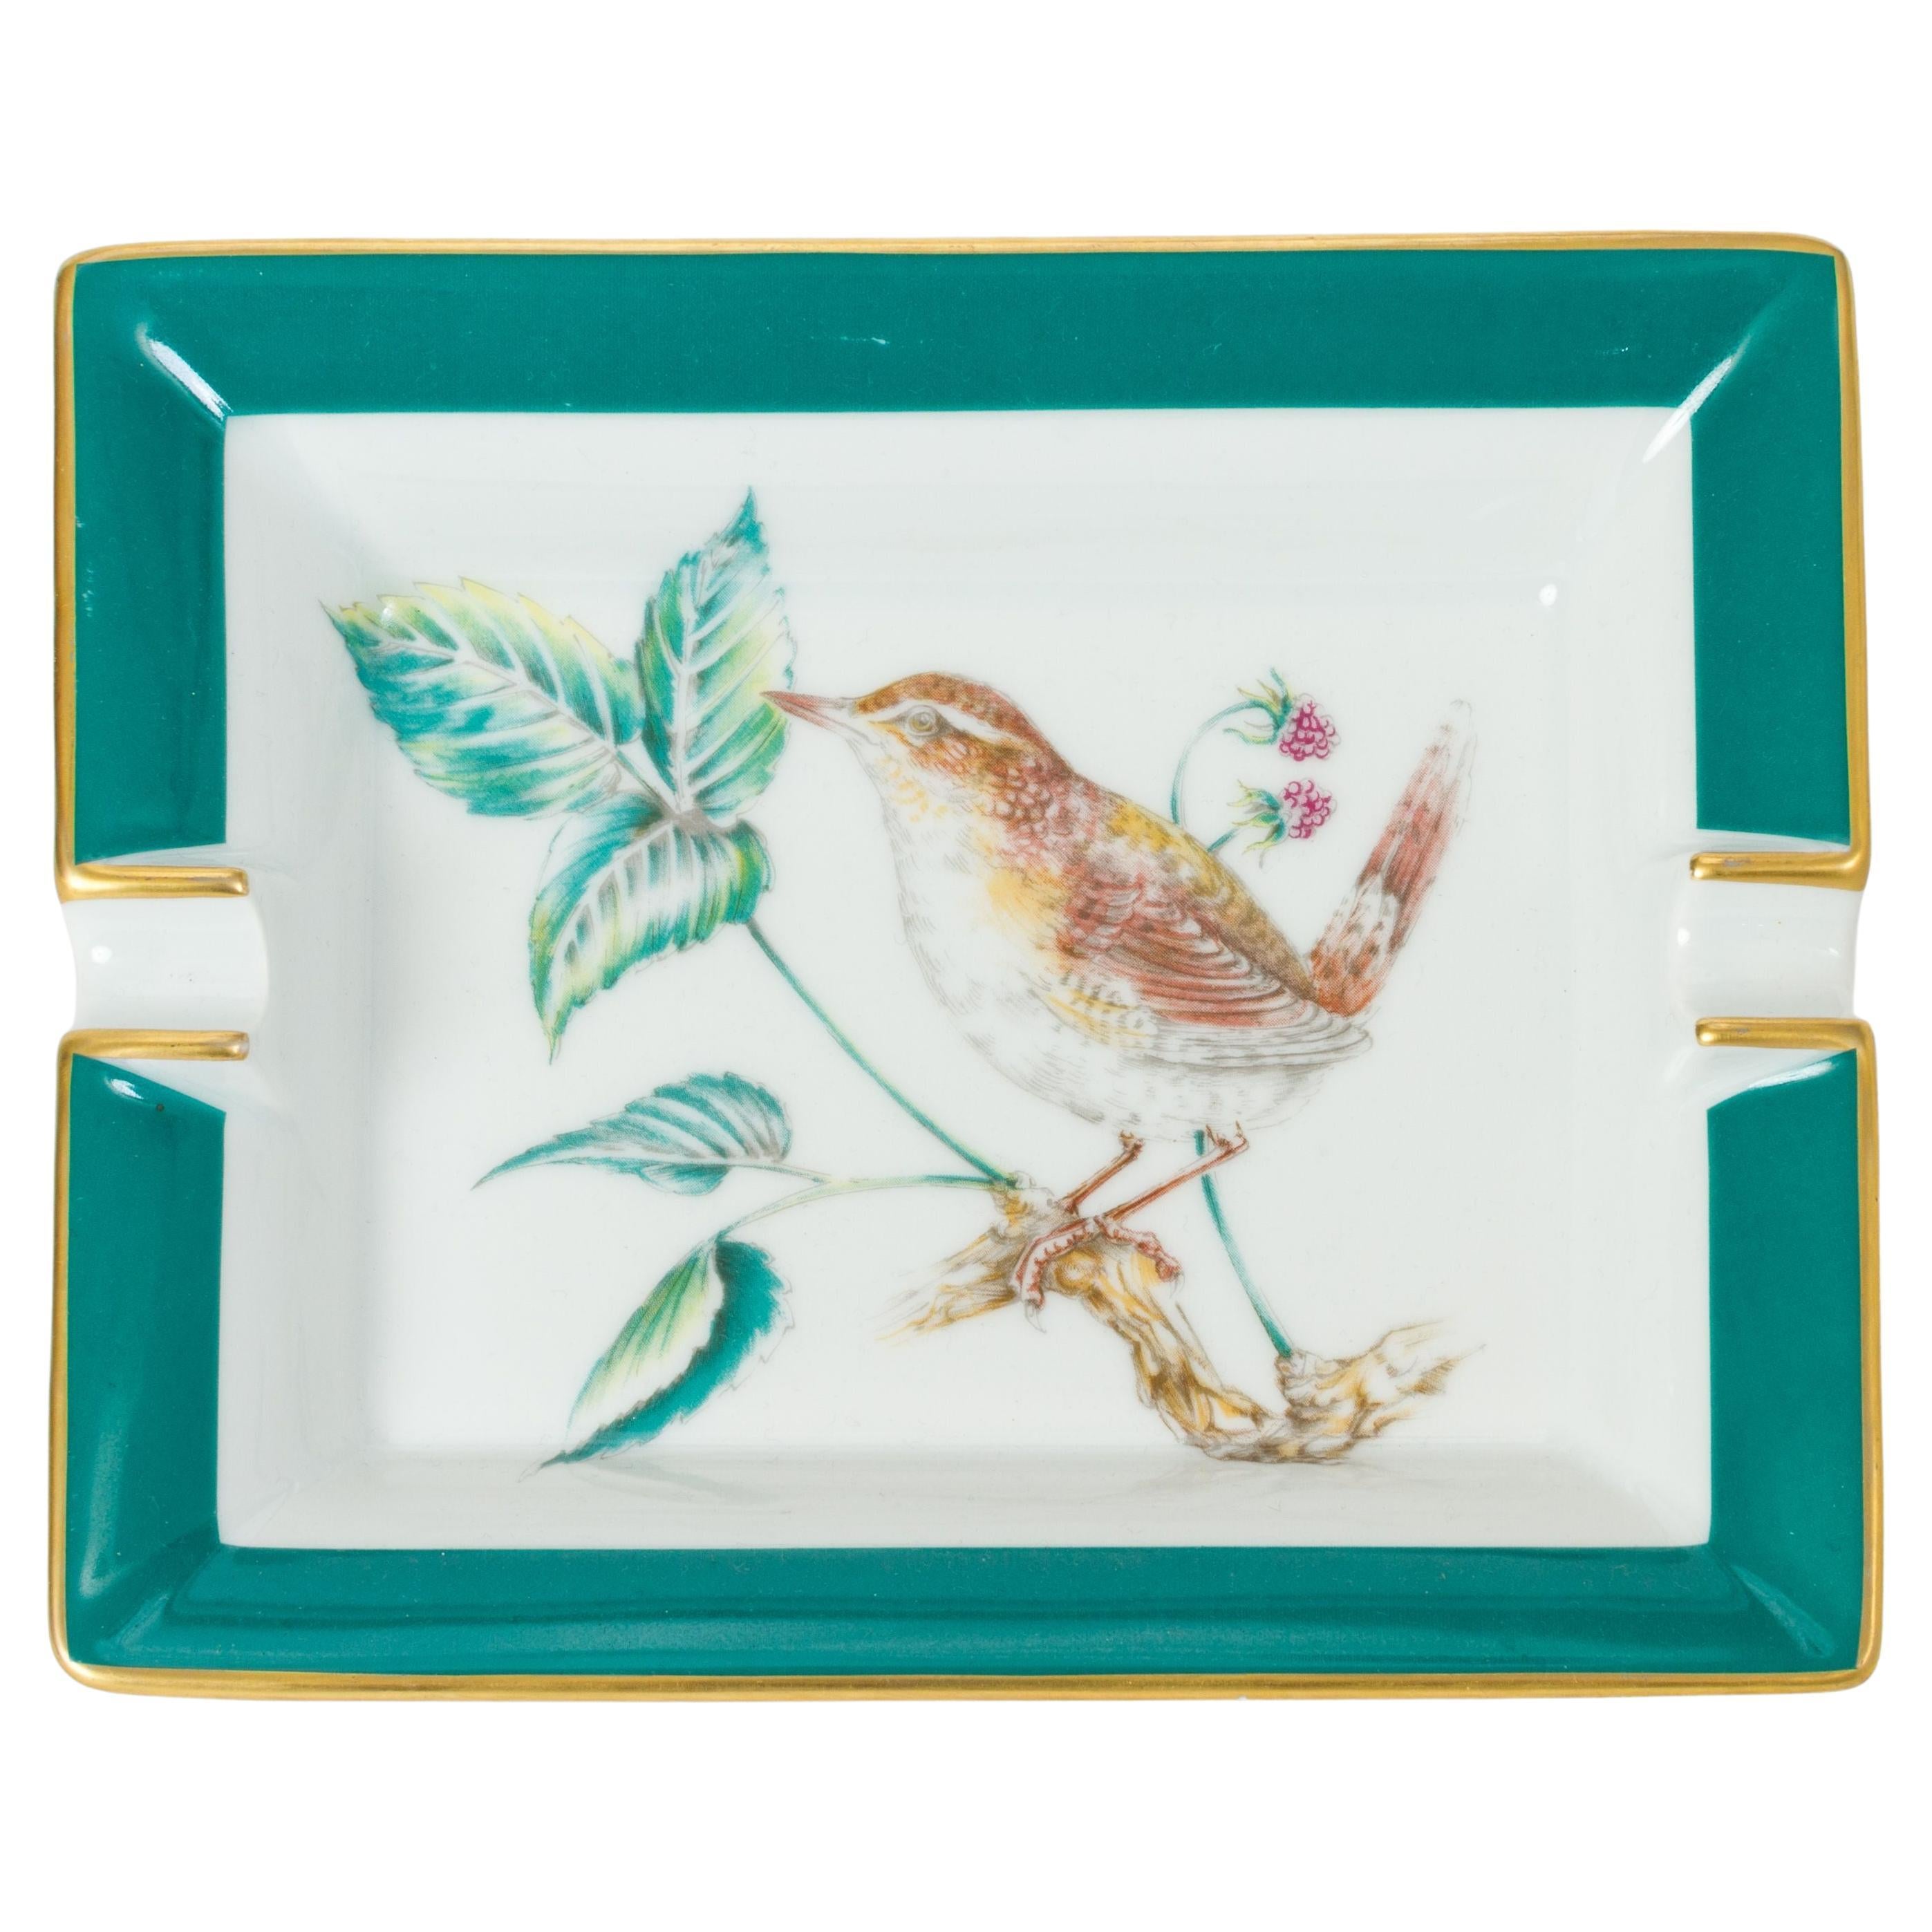 Hermès - Cendrier en porcelaine - Oiseaux verts